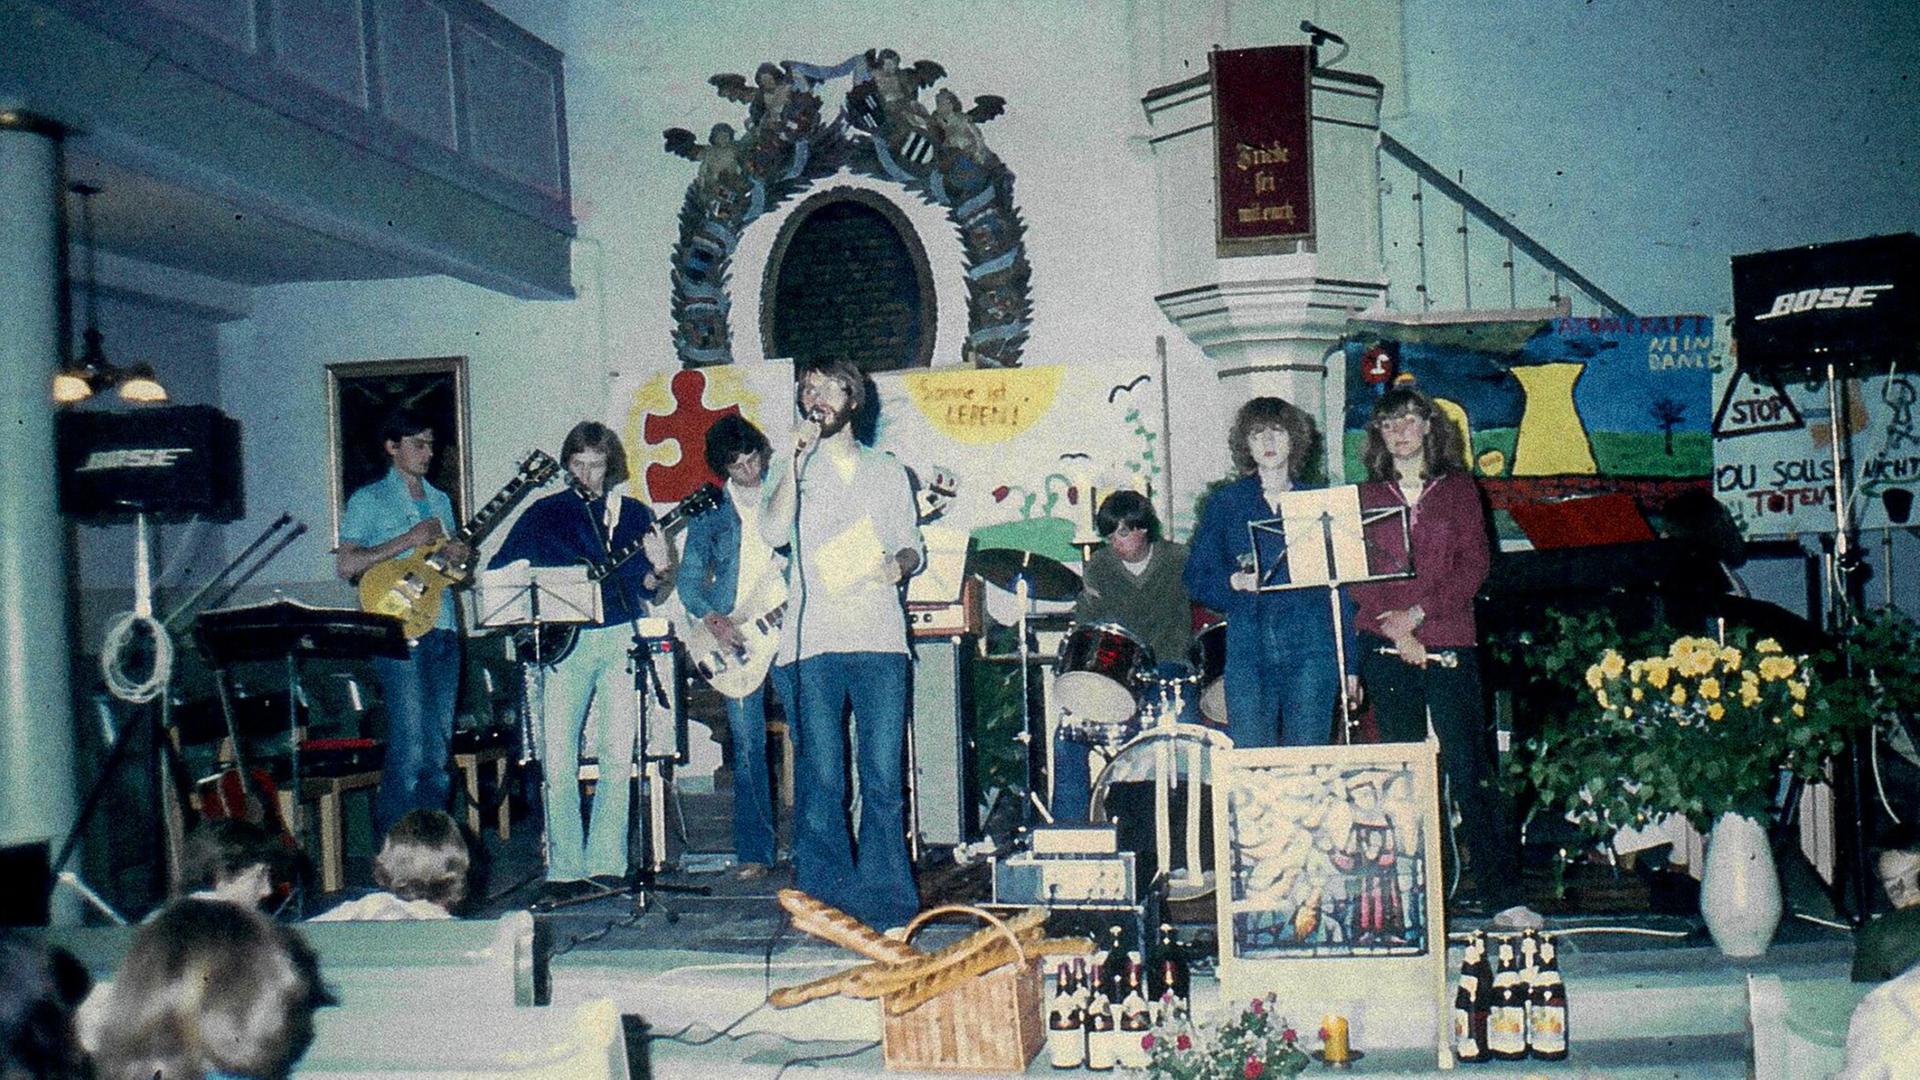 Eugen Eckert mit seiner Band Habakuk beim Feierabendmahl in Holzappel 1978.